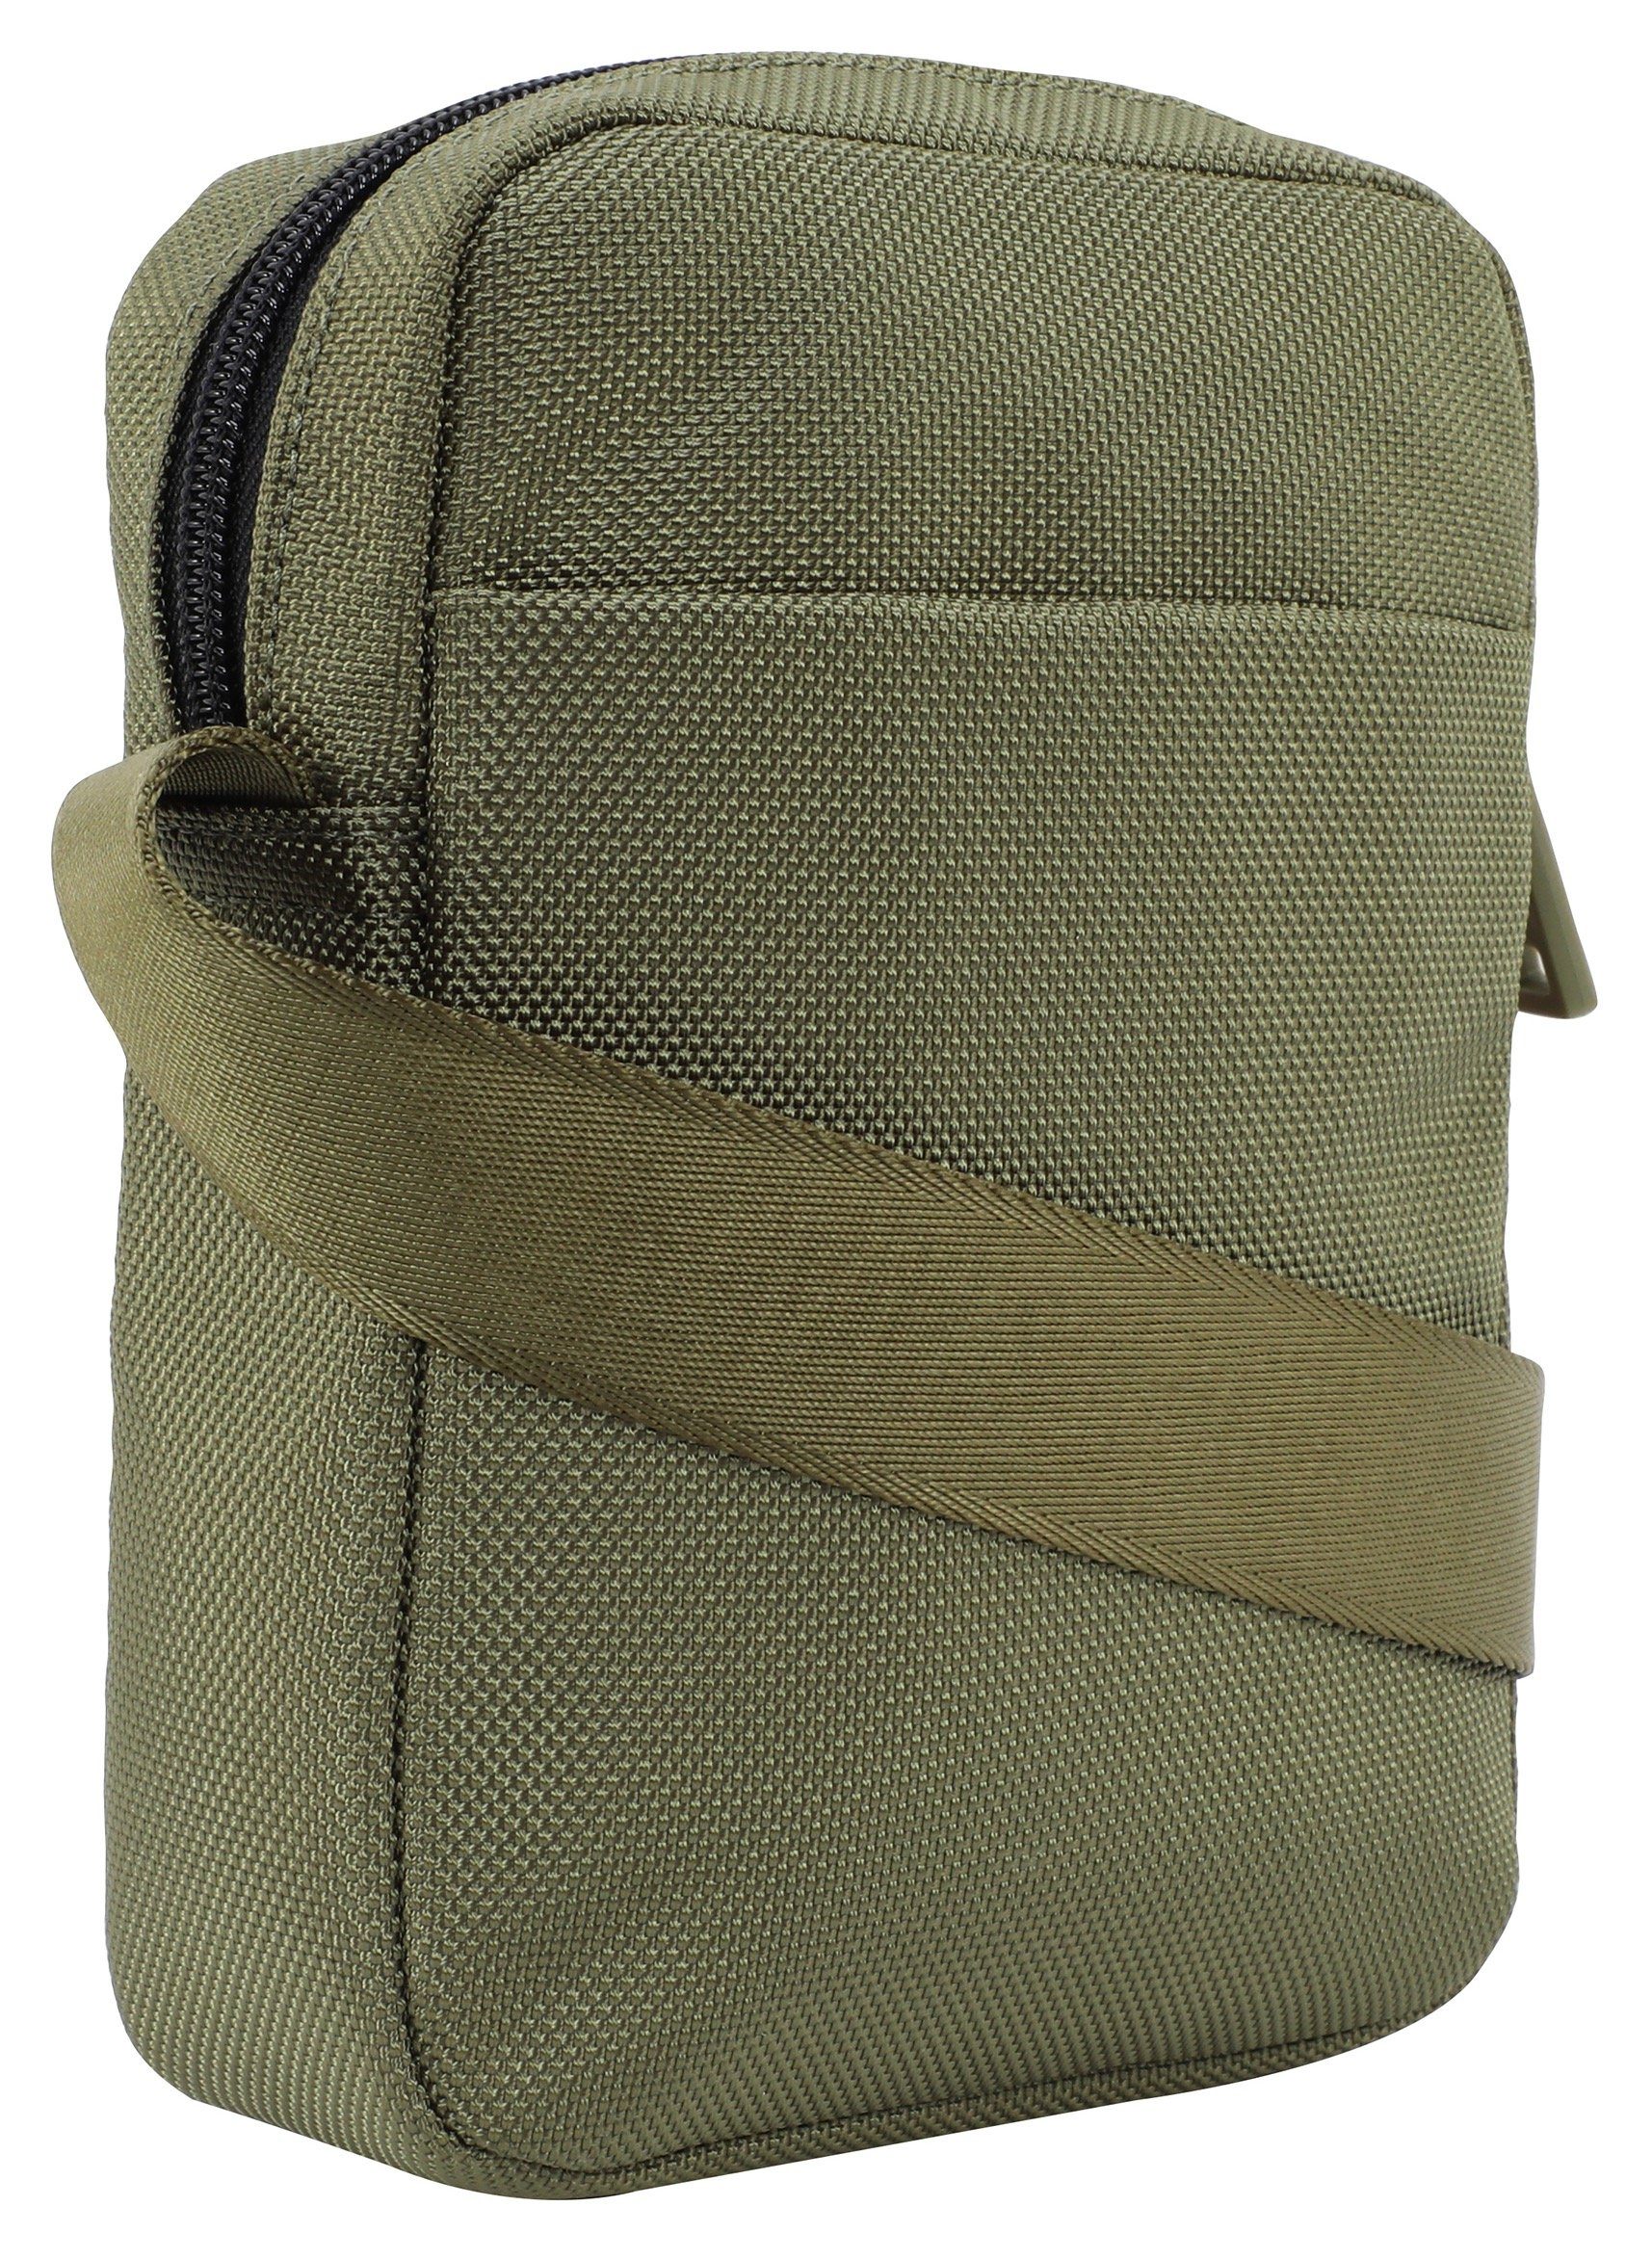 xsvz, Umhängetasche praktischen Design im Joop rafael dunkelgrün shoulderbag Jeans modica